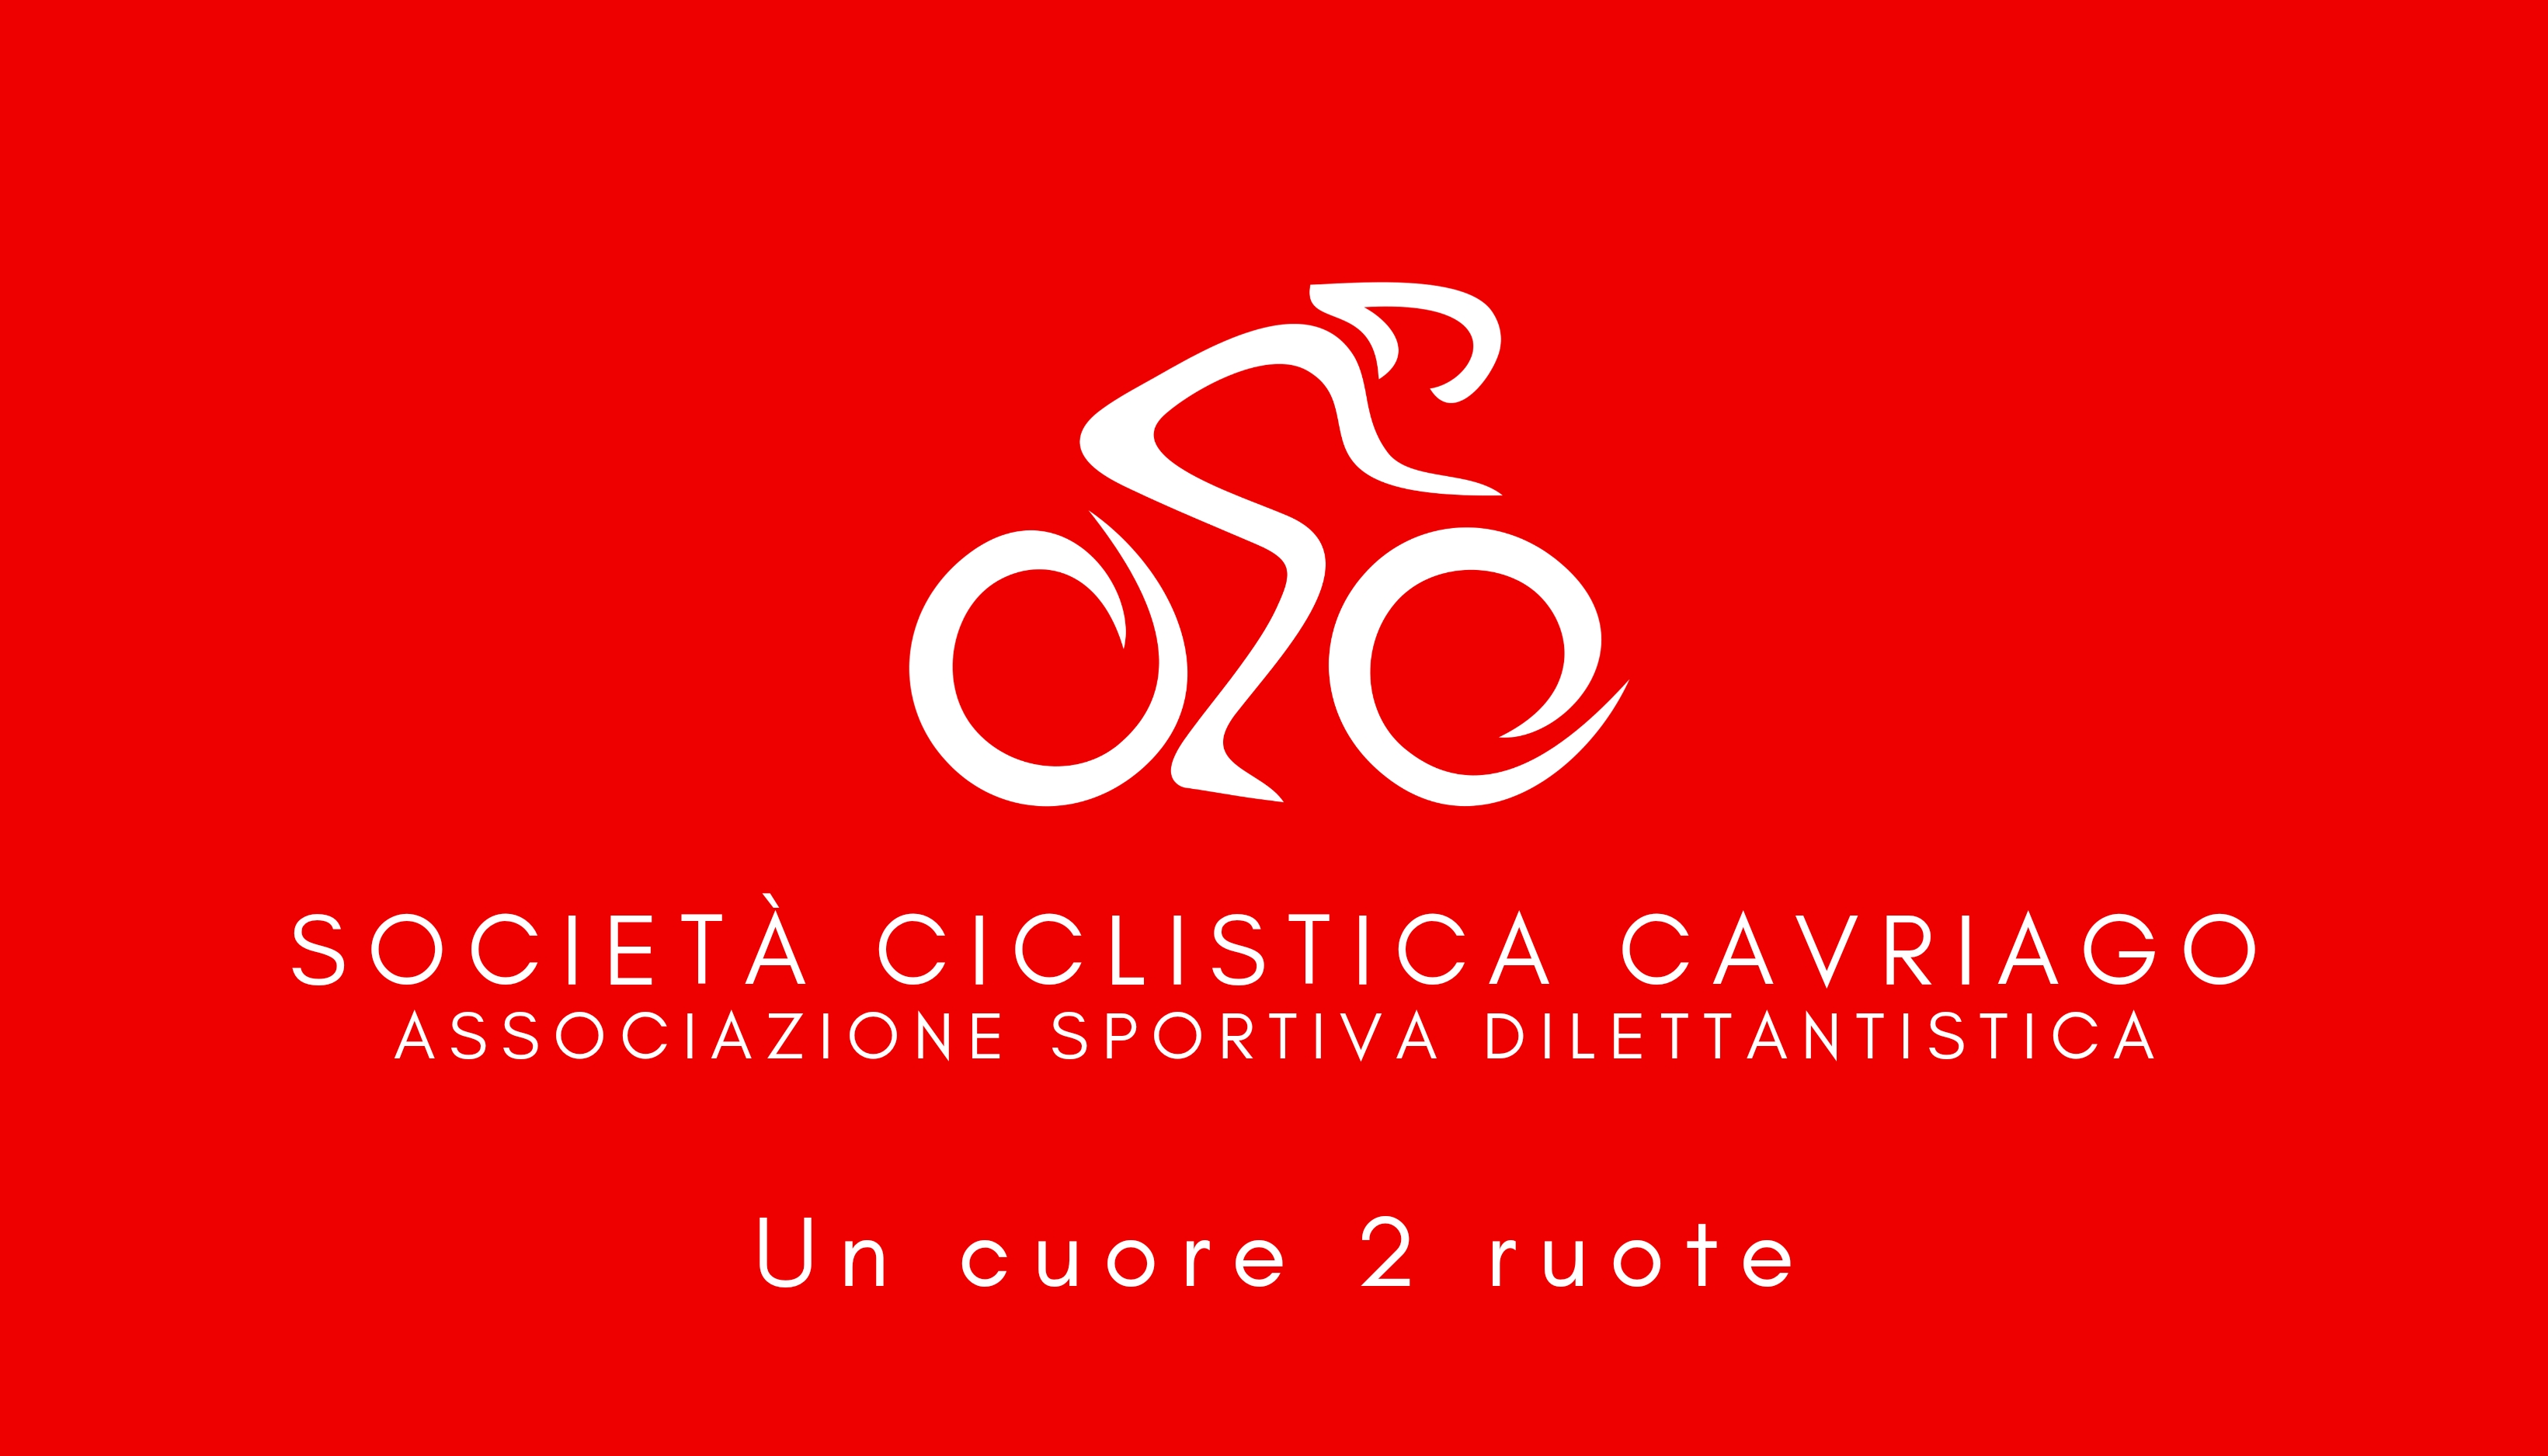 Società Ciclistica Cavriago